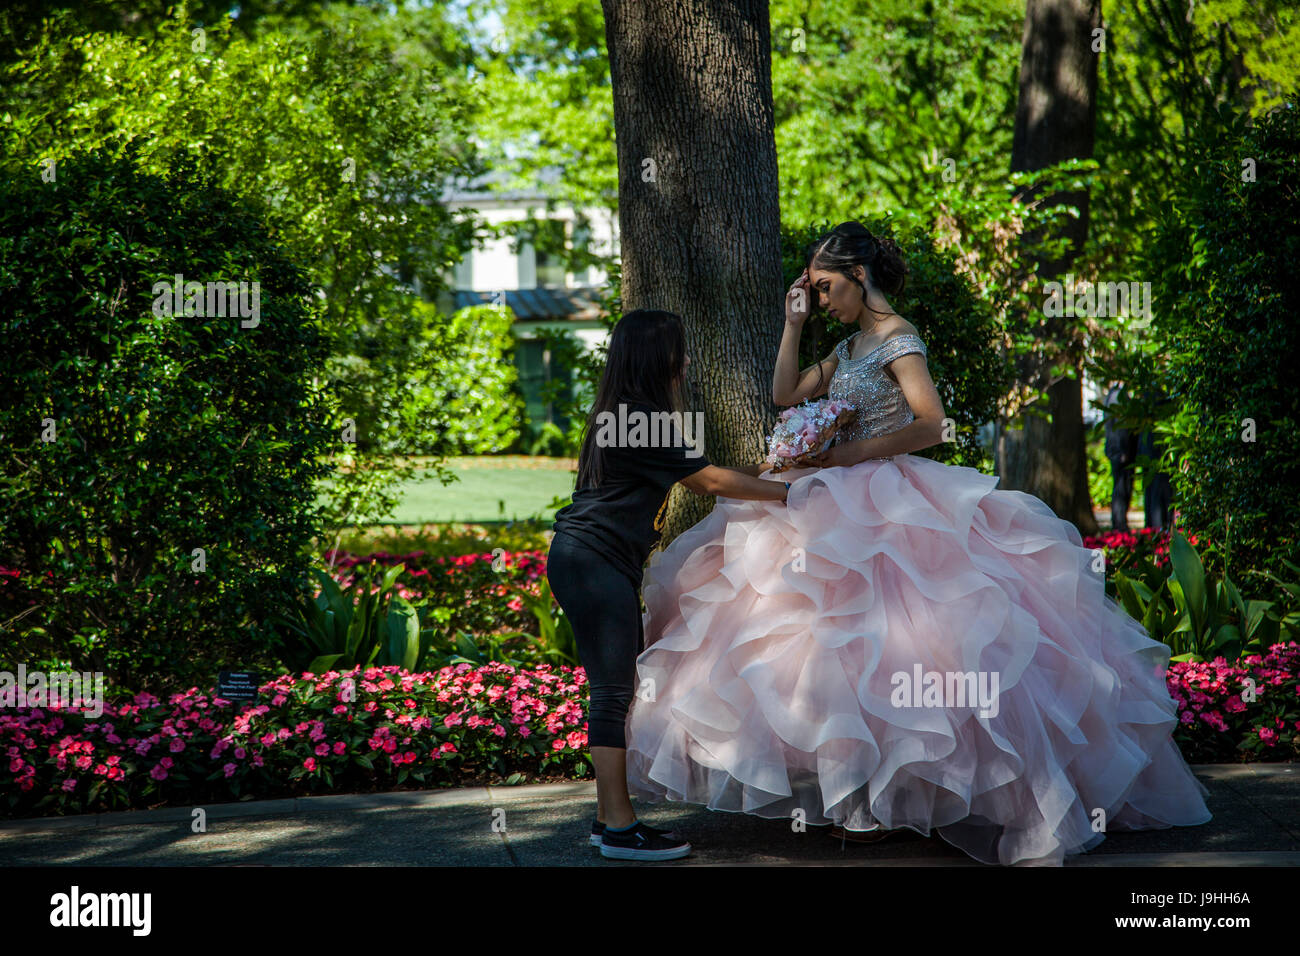 Jeune fille habillé pour la Quinceanera ou le coing, la célébration d'une fille de son quinzième anniversaire à l'Arboretum de Dallas, Texas Banque D'Images